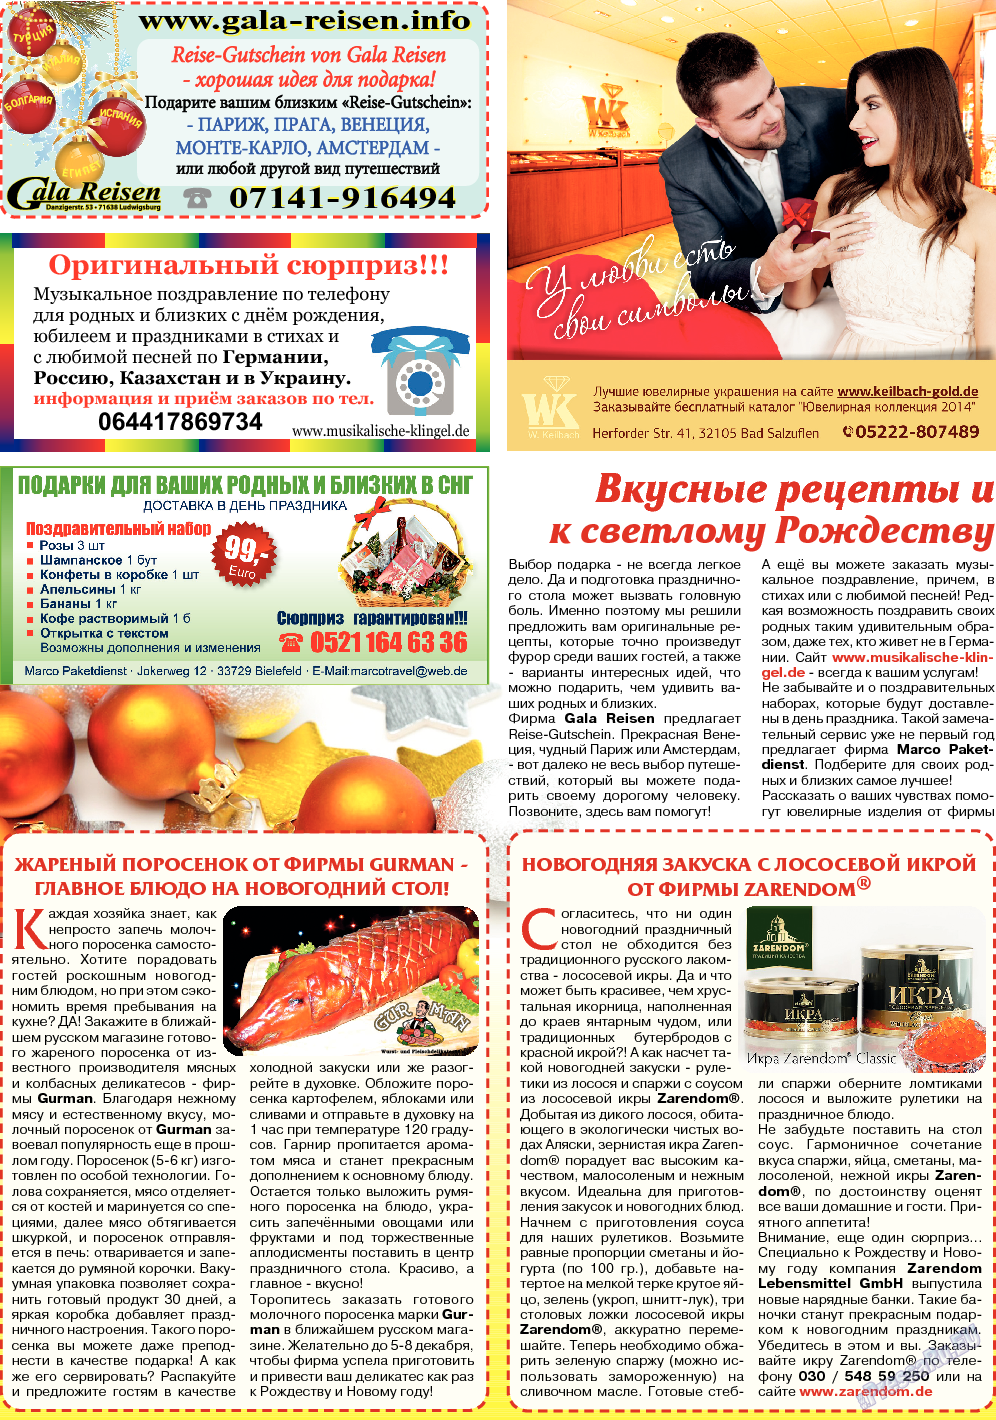 Кругозор, газета. 2013 №12 стр.16